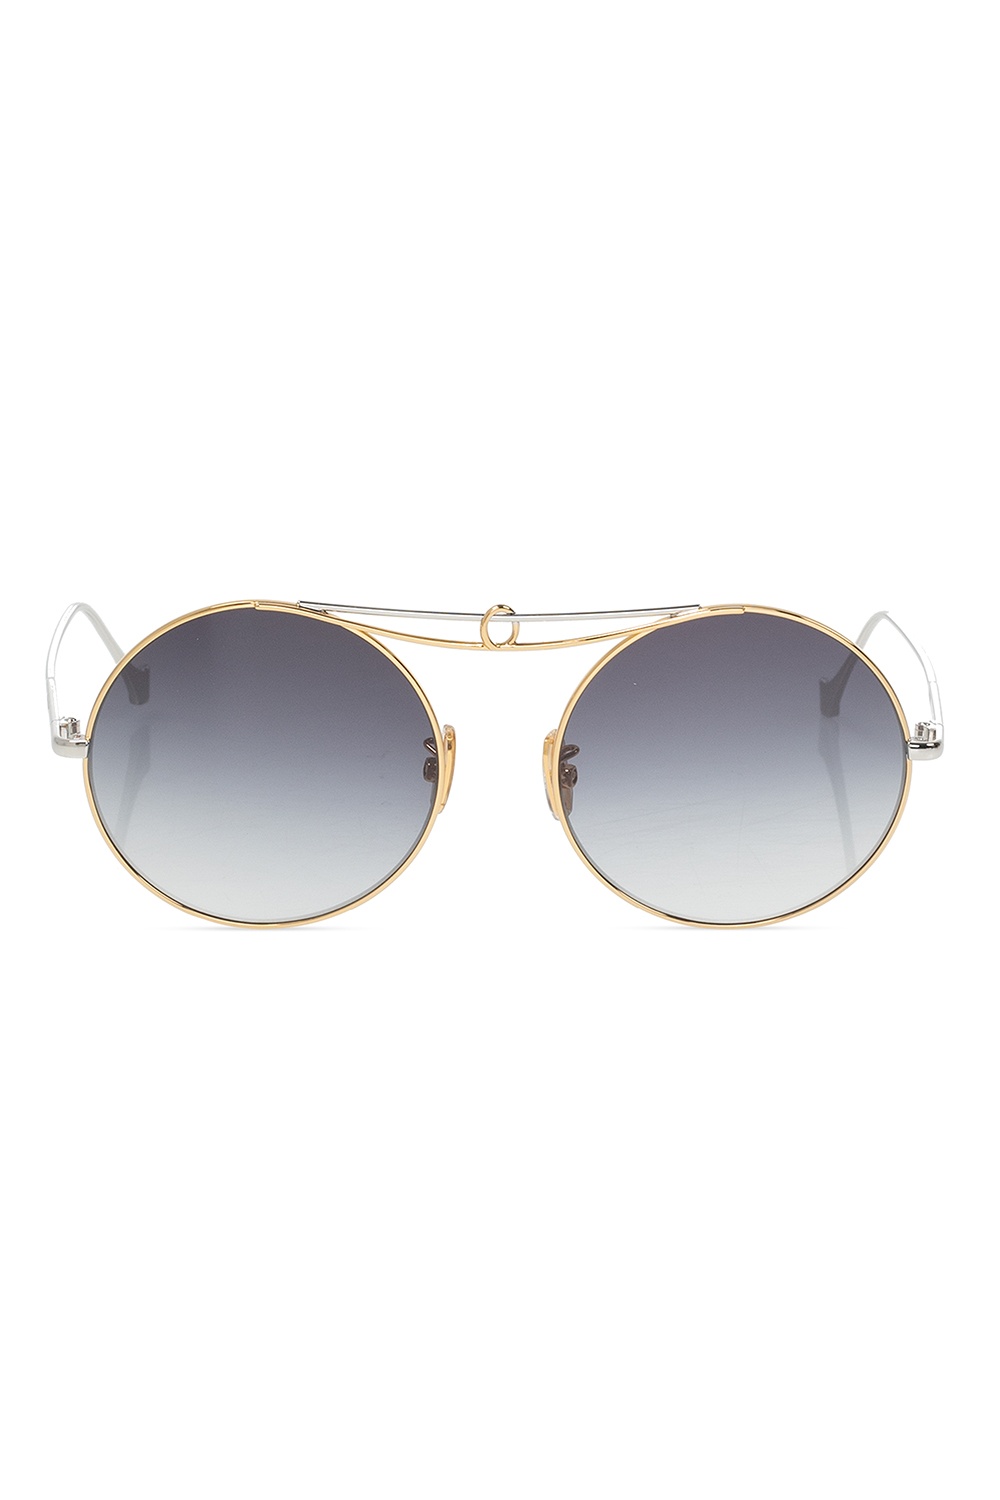 Loewe Branded Respek sunglasses